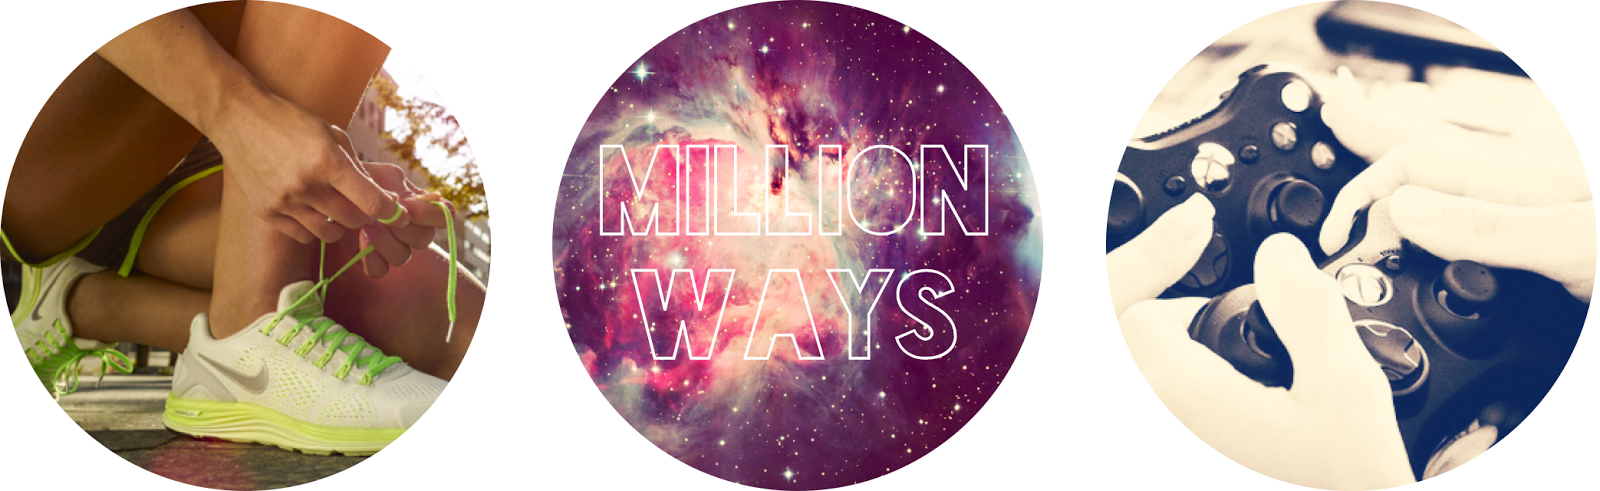                     Million Ways